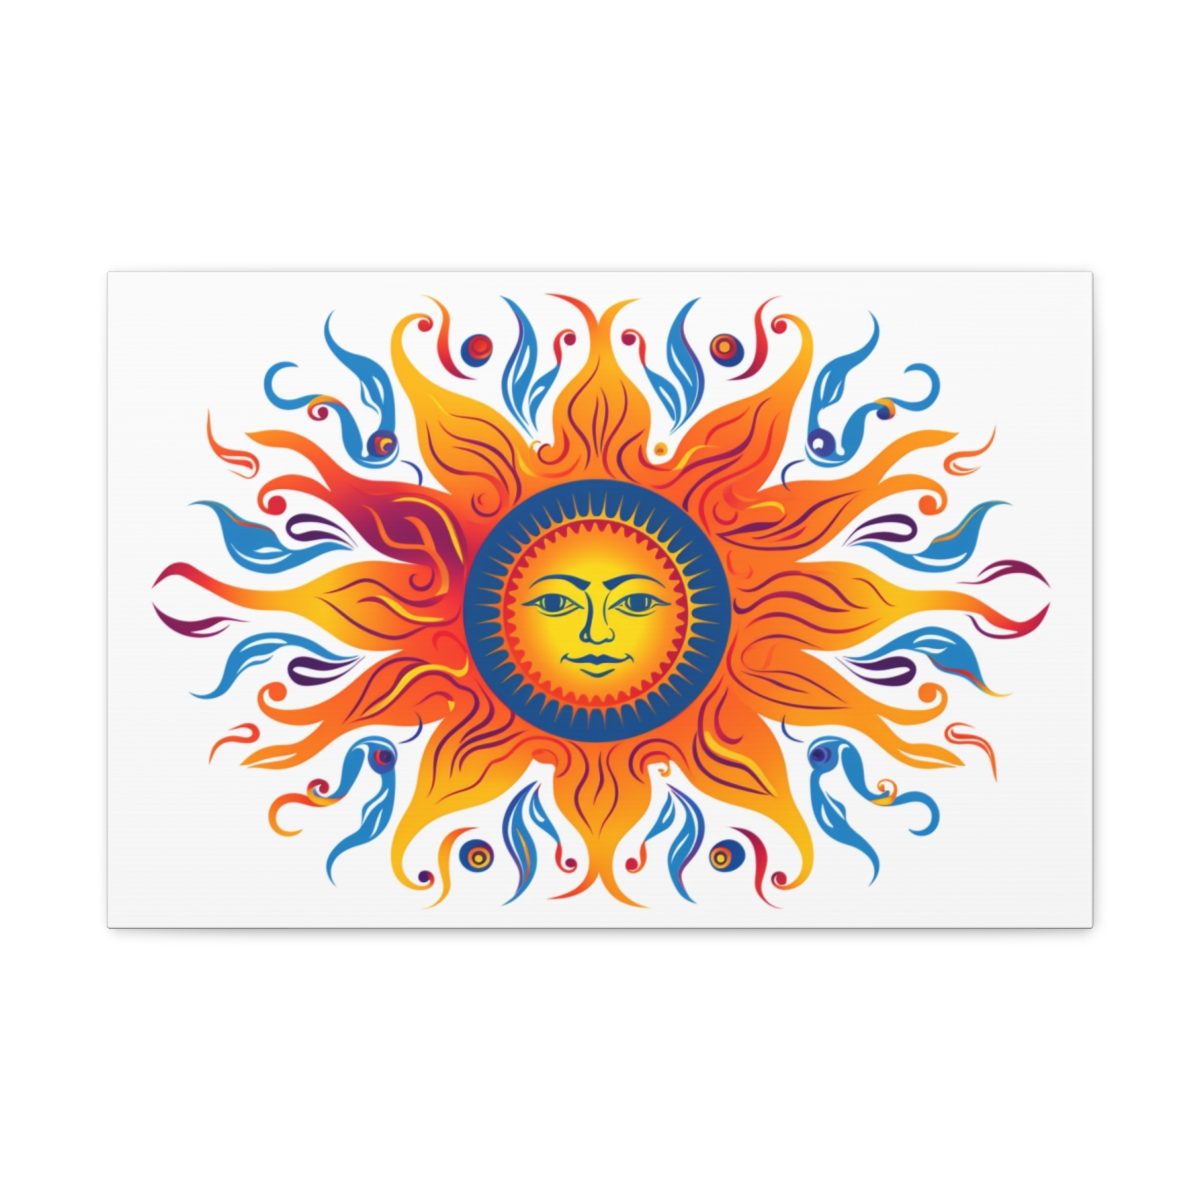 Trippy Hippie Sun Art Canvas Print: The Star That Brings Life